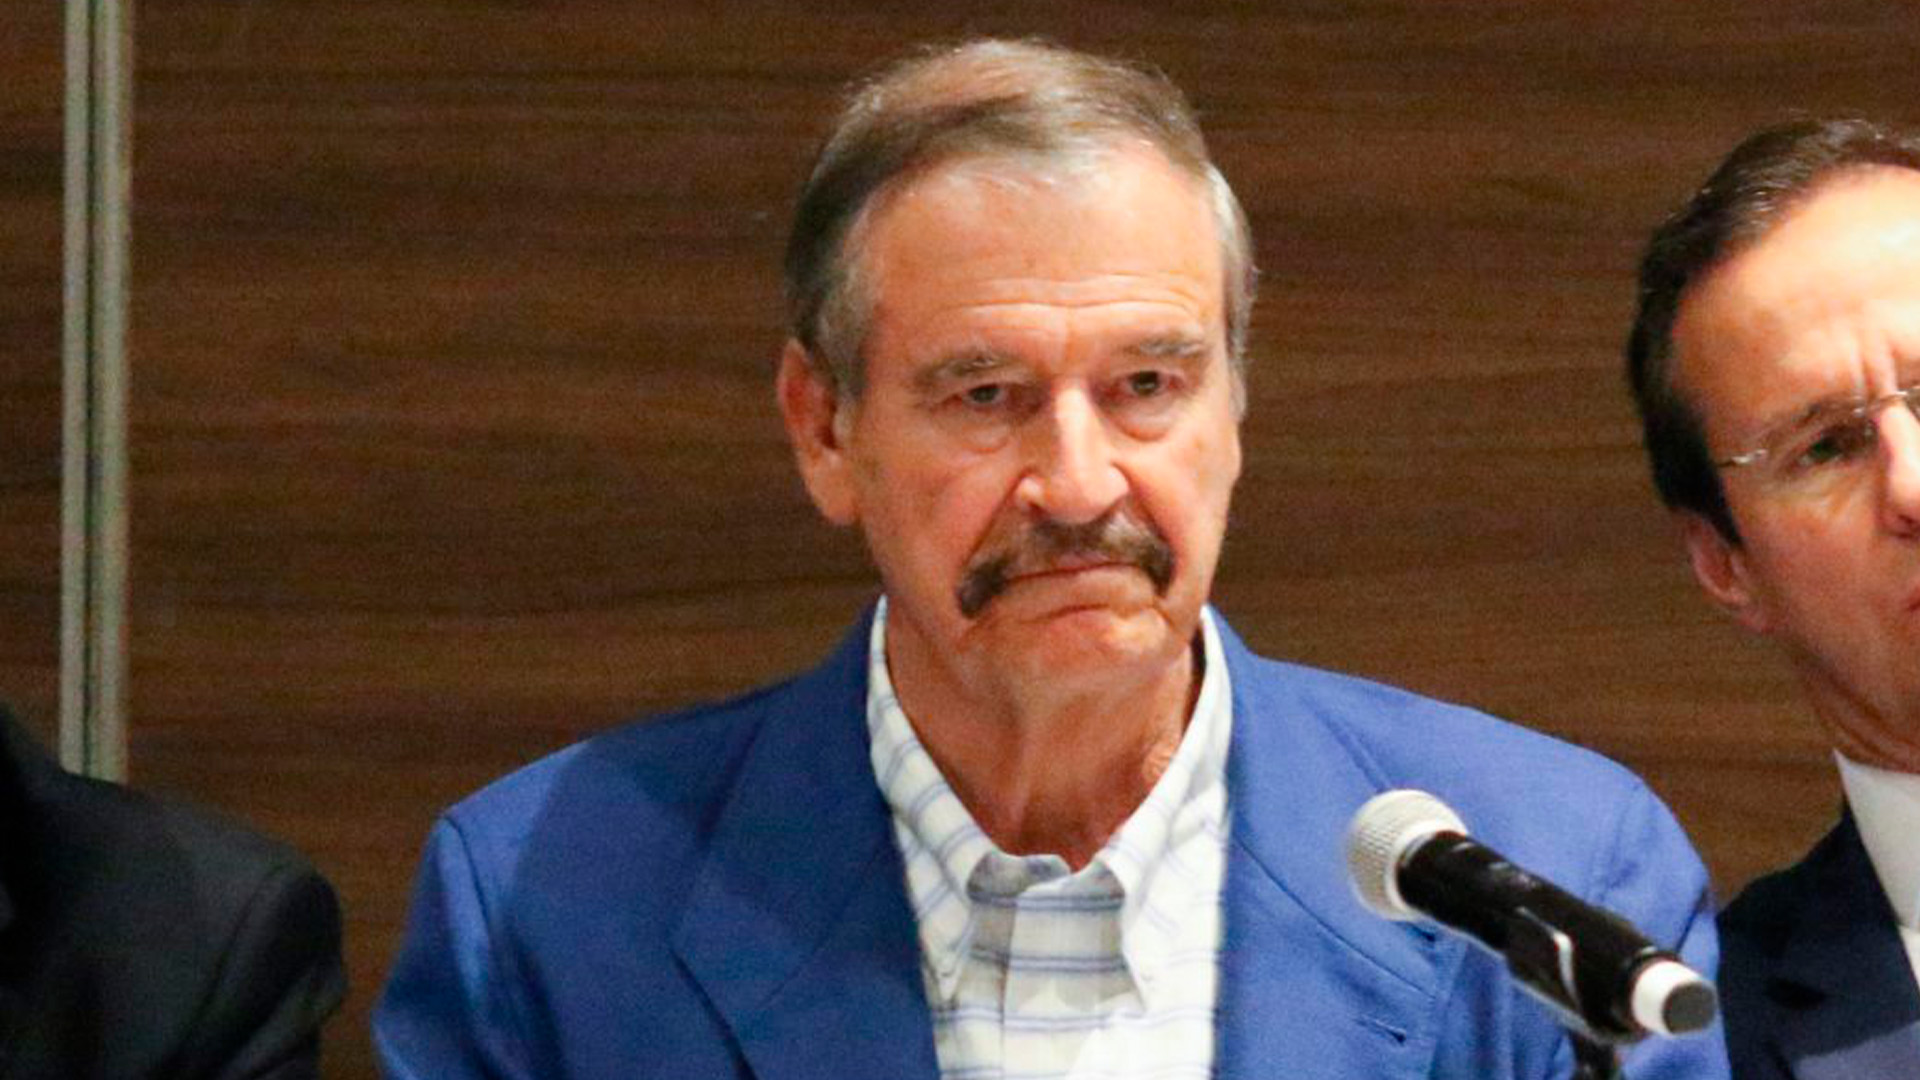 Vicente Fox criticó concierto de Rosalía en el Zócalo: “La austeridad es solo cuando les conviene”